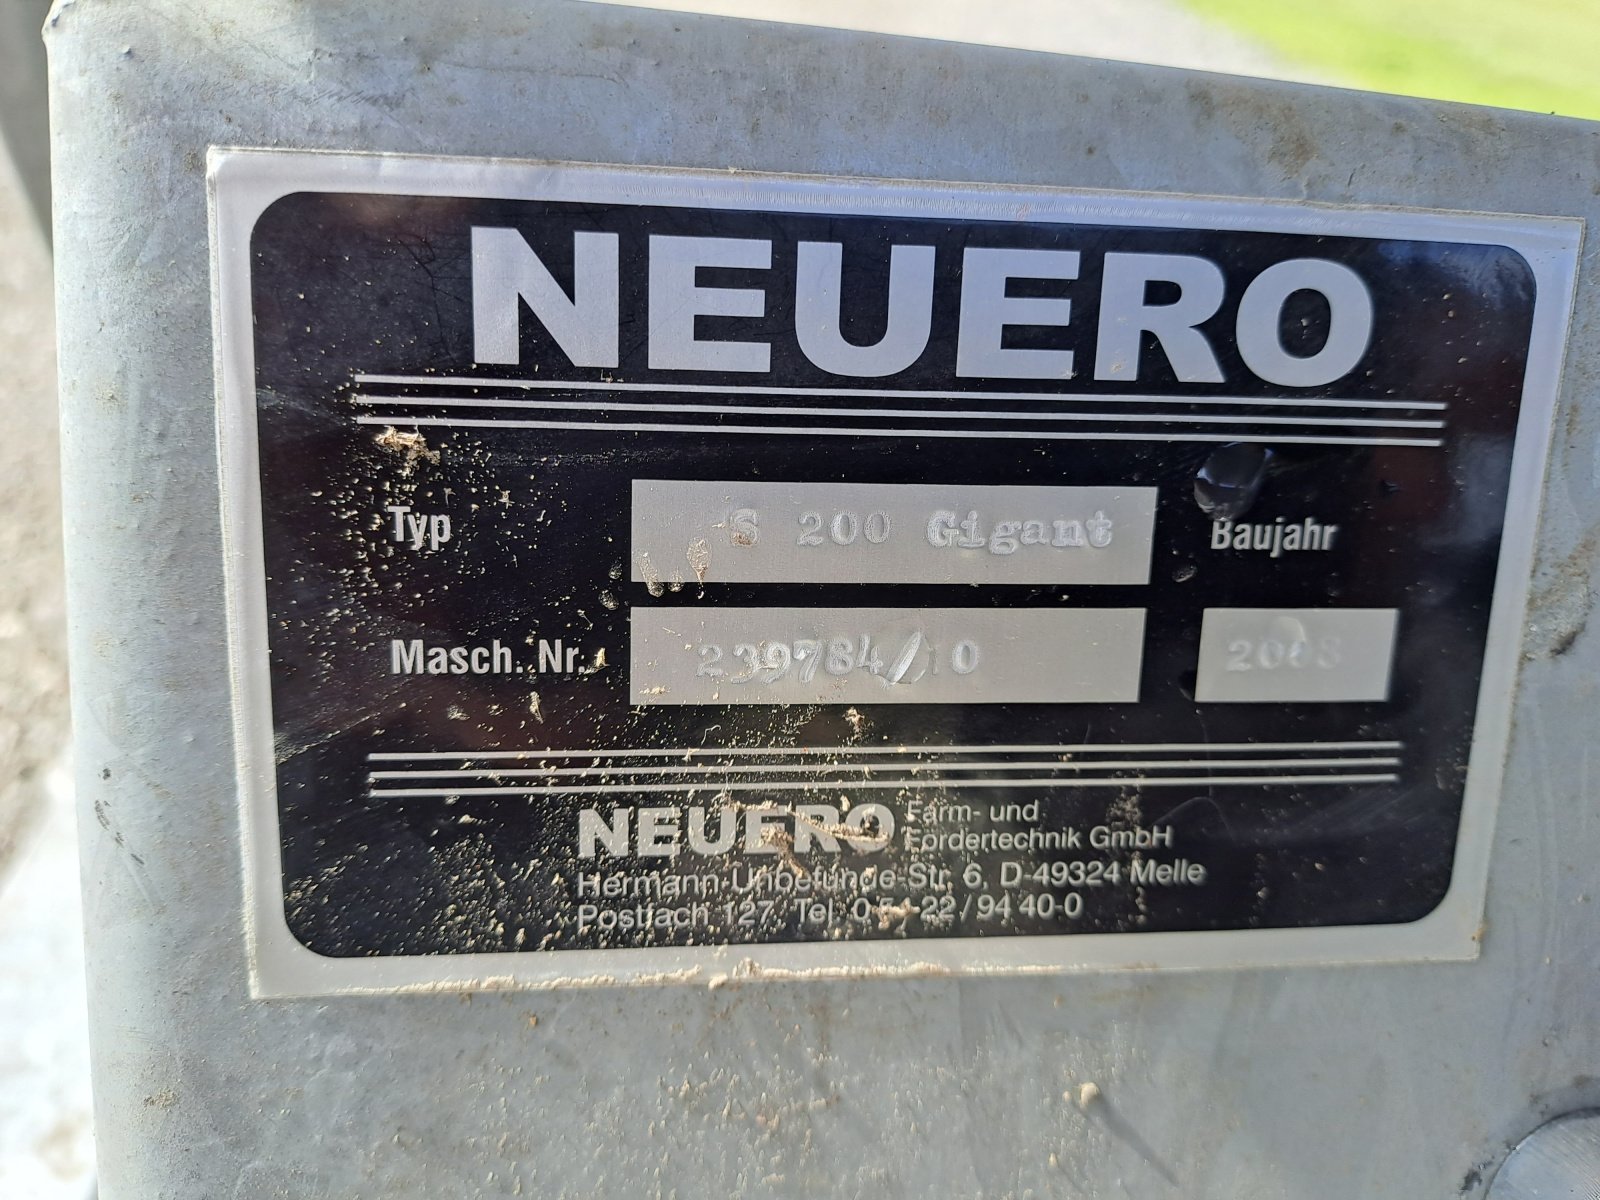 Getreidekanone des Typs Neuero S 200 Gigant, Gebrauchtmaschine in Neversdorf (Bild 3)